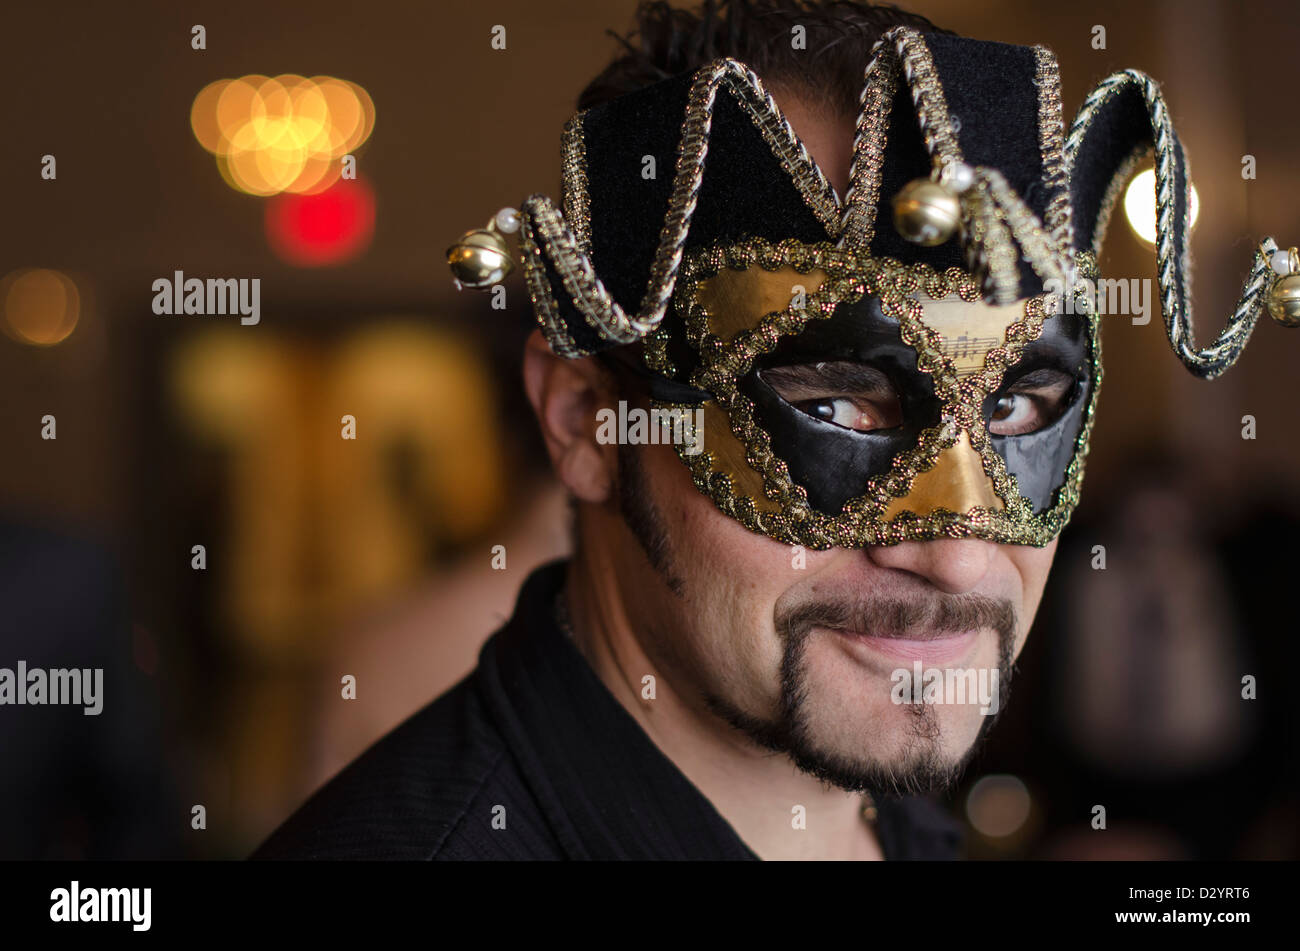 Ein Mann mit einem Masquerade Ball Maske Stockfotografie - Alamy